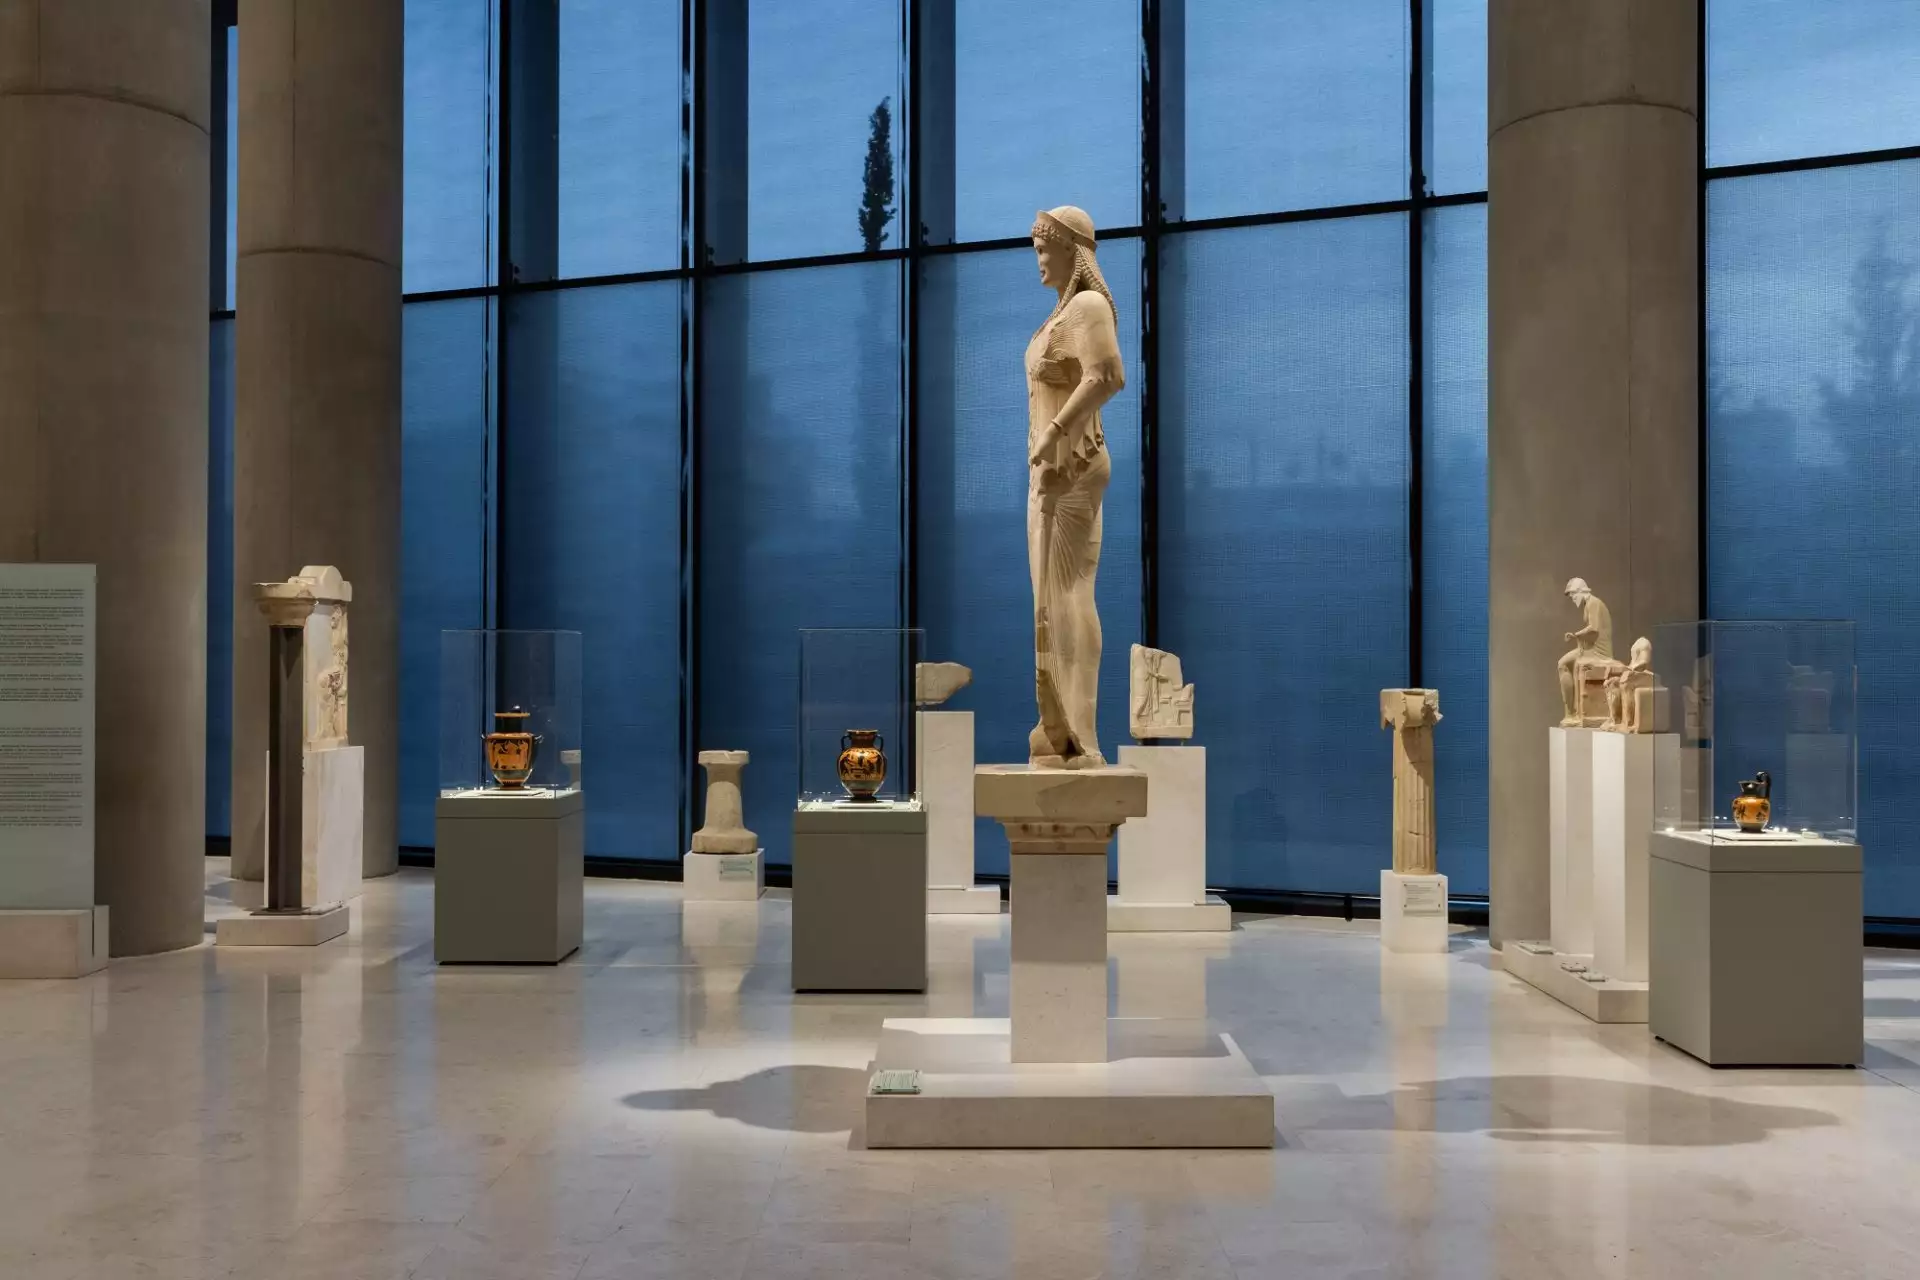 Νέα θεματική παρουσίαση «Ο κόσμος της εργασίας στην αρχαία Αθήνα» στο Μουσείο Ακρόπολης